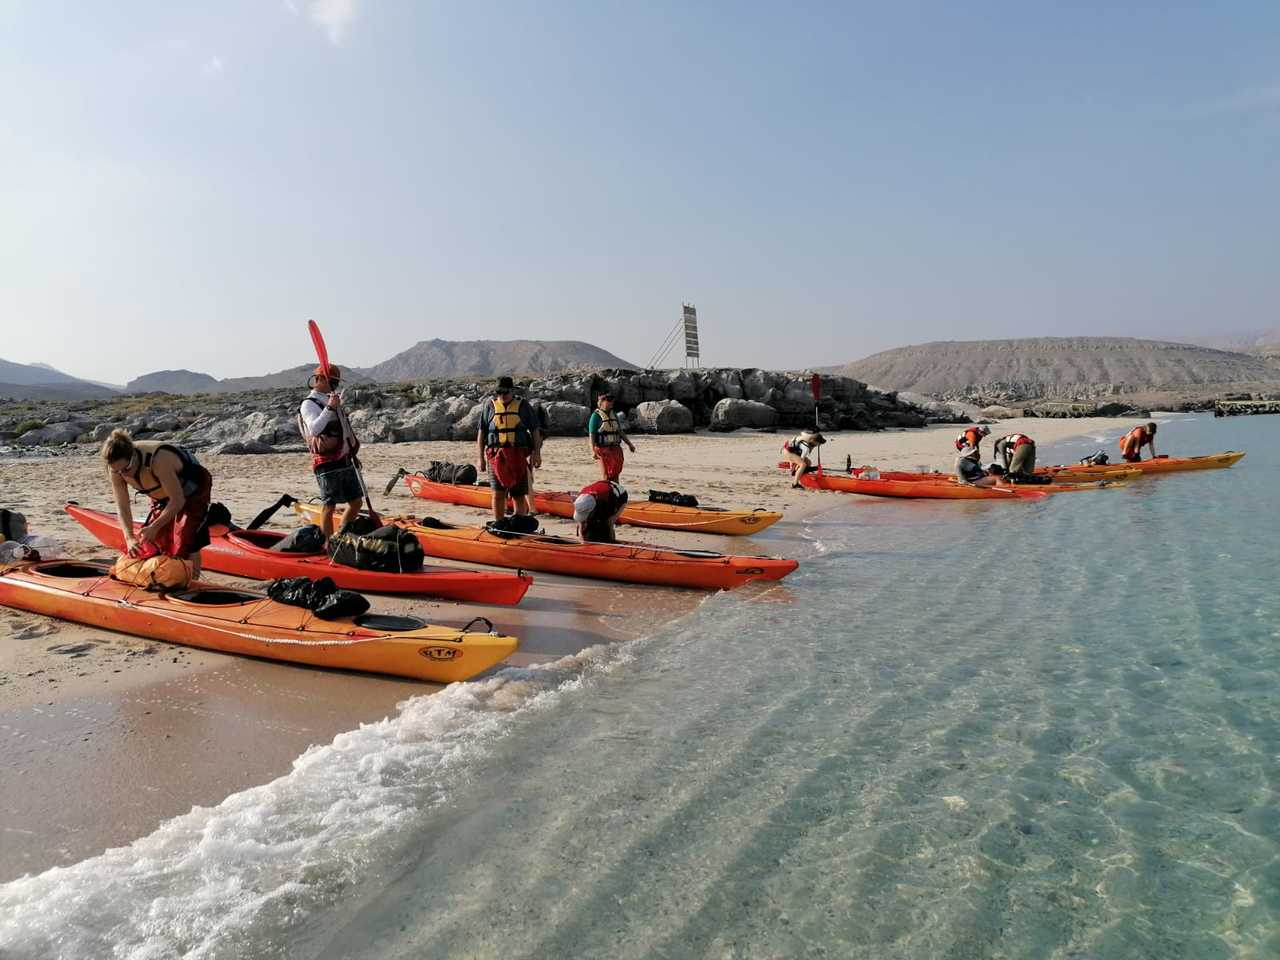 groupe de randonneurs qui se prépare à monter sur des kayaks sur une plage à Oman